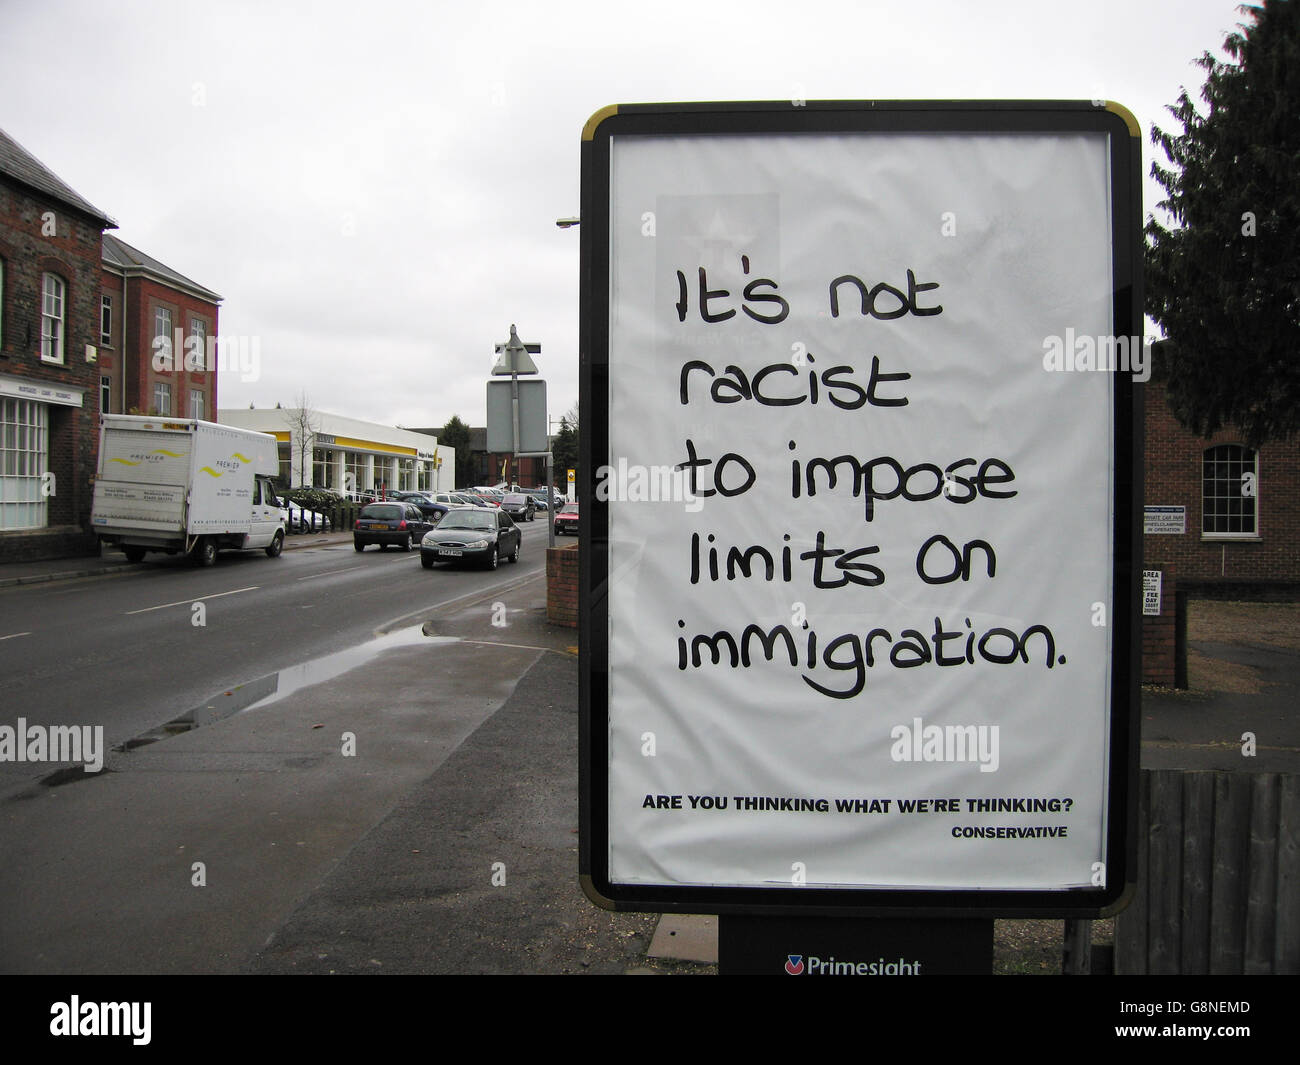 Wohl rassistisch anti-Immigration-Kampagne von der konservativen Partei in Vereinigtes Königreich allgemeine Wahl 2005.  Dieses Plakat wurde in Newbury, Berkshire, UK Stockfoto